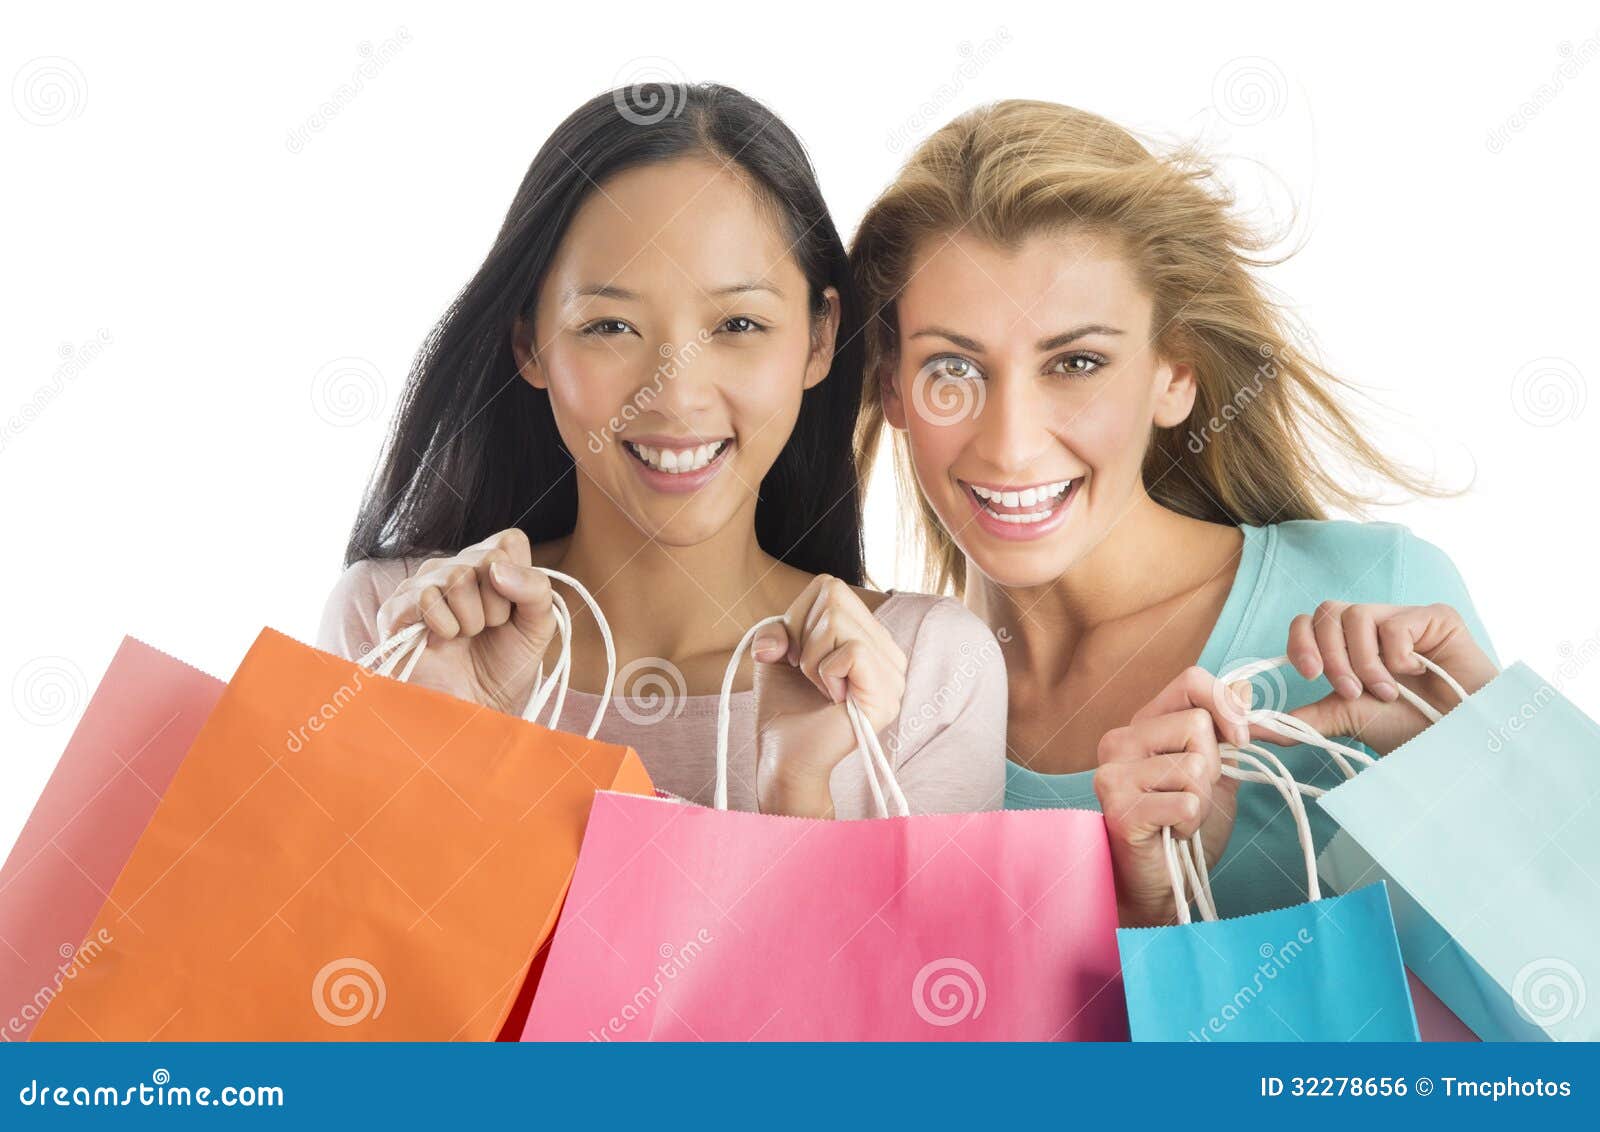 shopaholic female friends carrying shopping bags